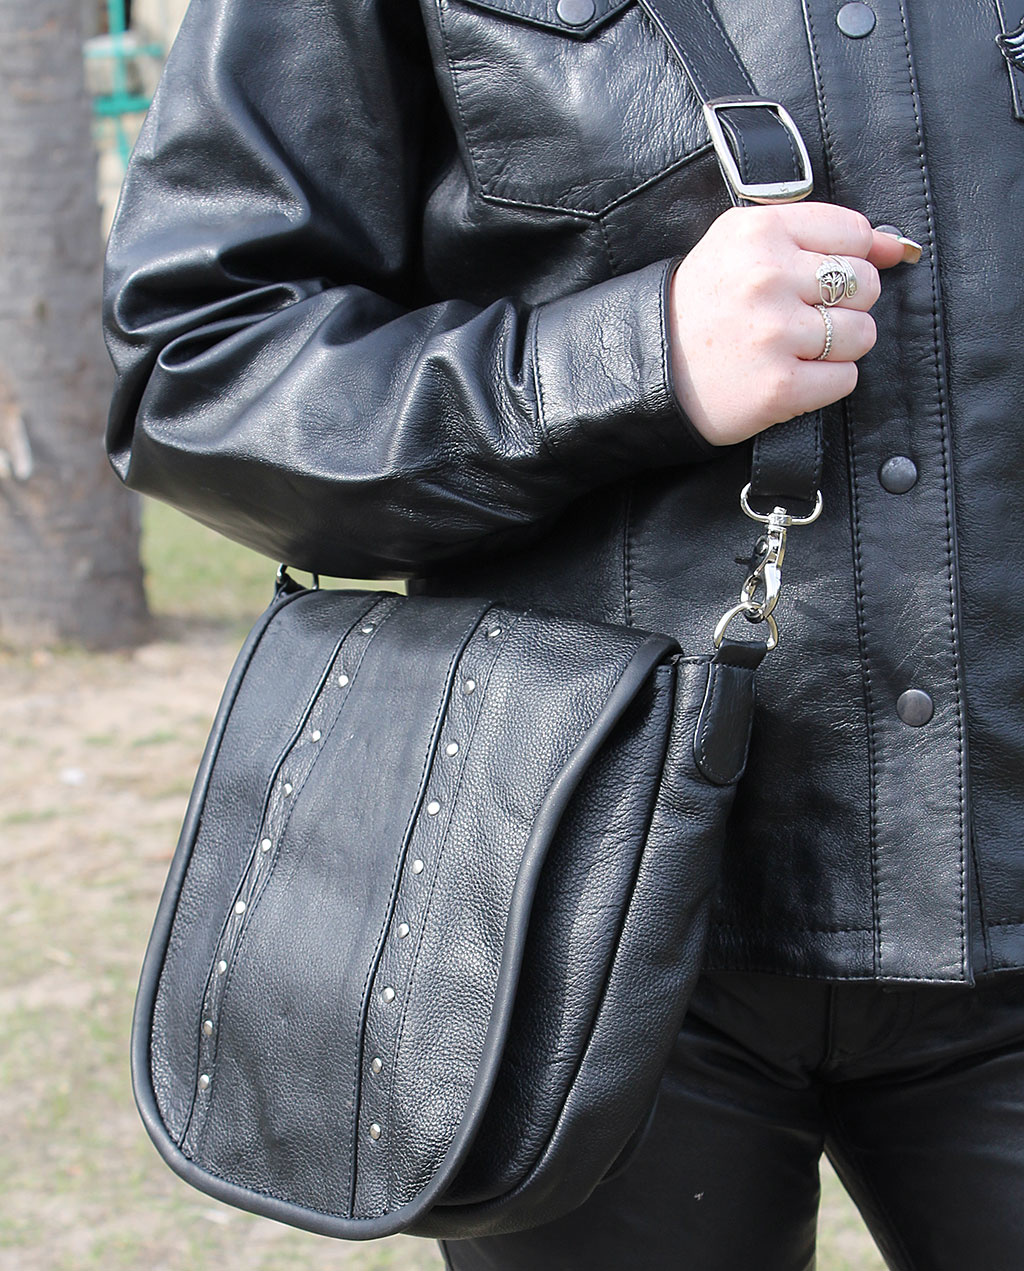 Womens Genuine Leather Purse Adjustable Strap Mid Size Multi Pocket  Shoulder Bag Navy Blue